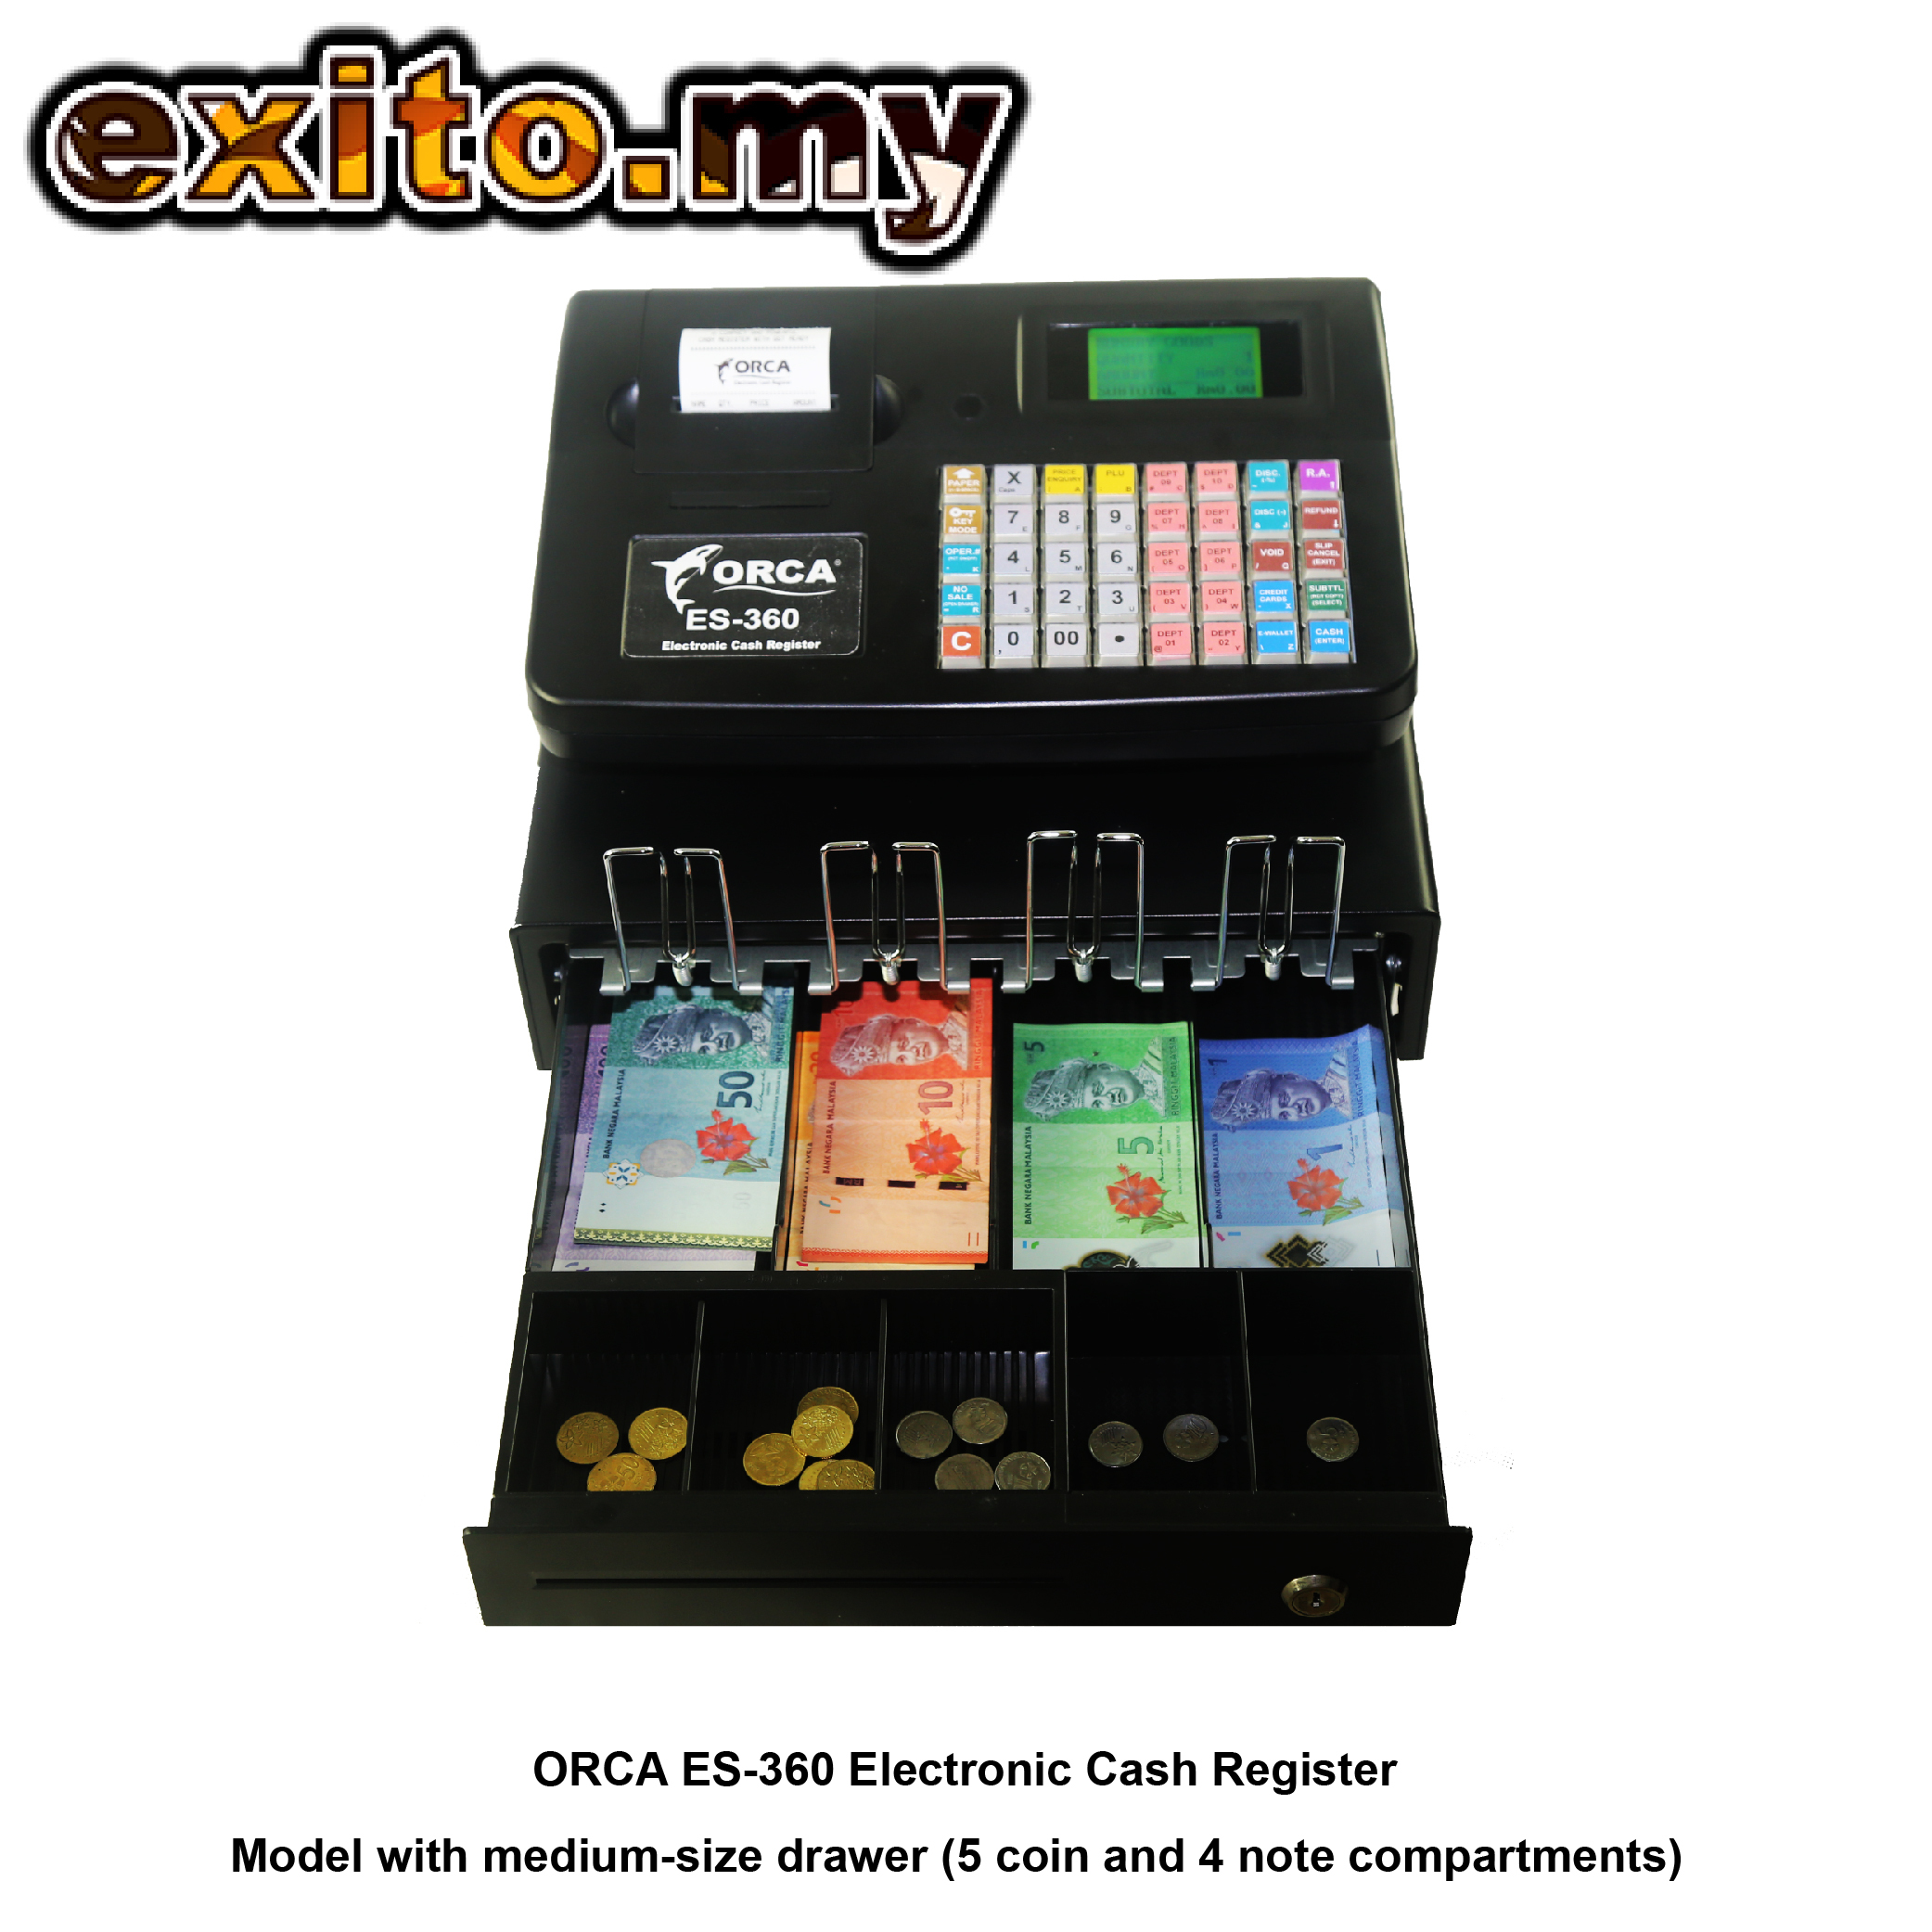 4 ORCA ES-360 Electronic Cash Register